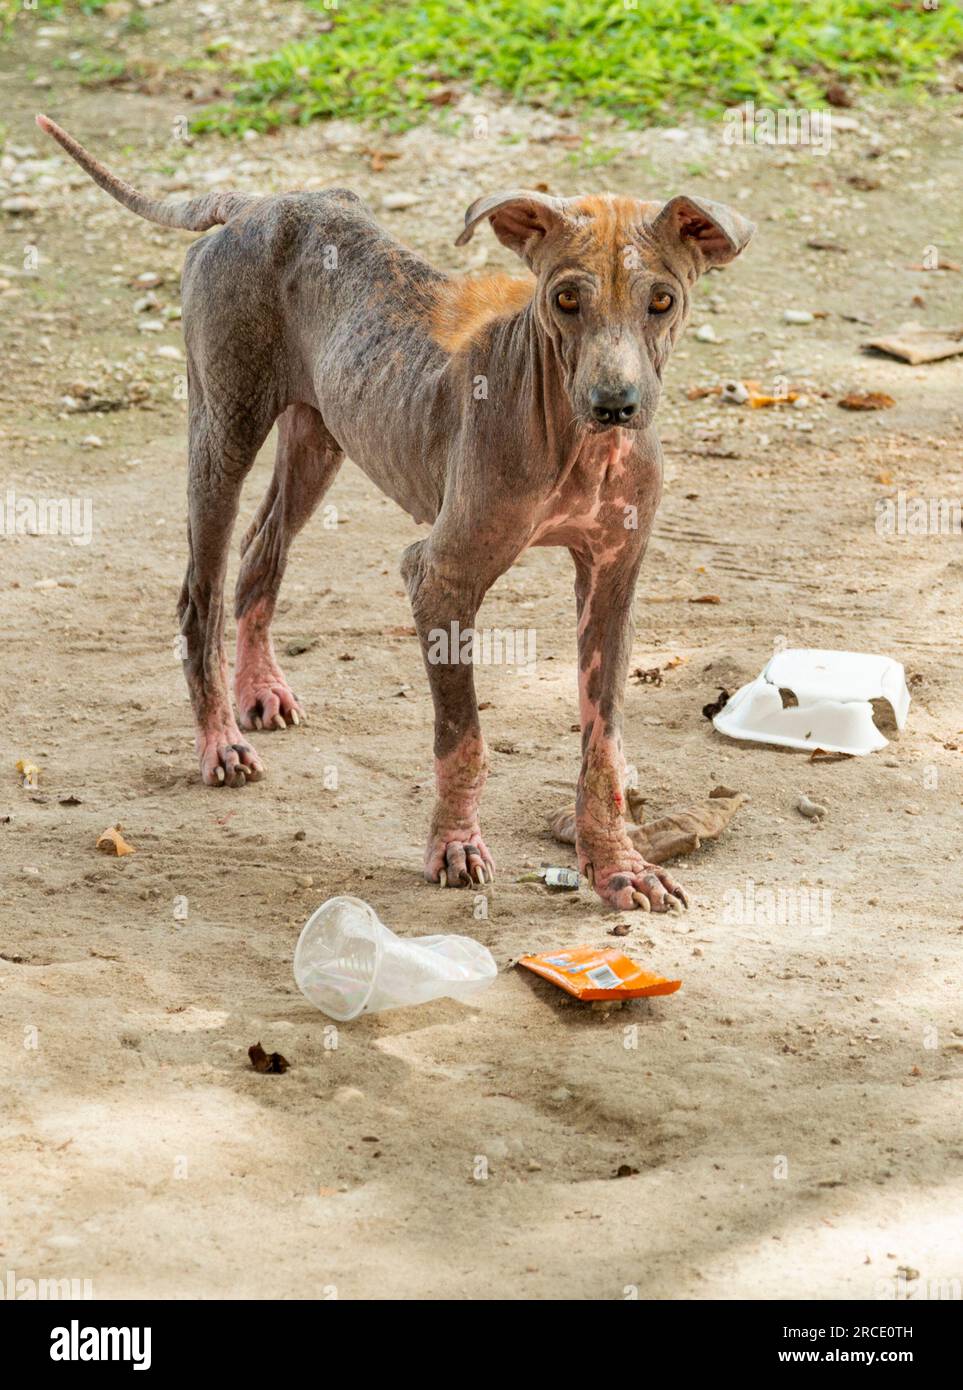 Kahl, männlicher Hund in erbärmlichem Zustand, mit nur sehr kleiner Haarabdeckung auf dem Rücken, lebt auf einem öffentlichen Friedhof, sehr vorsichtig und untergewichtig, aber mit schöner Schönheit Stockfoto